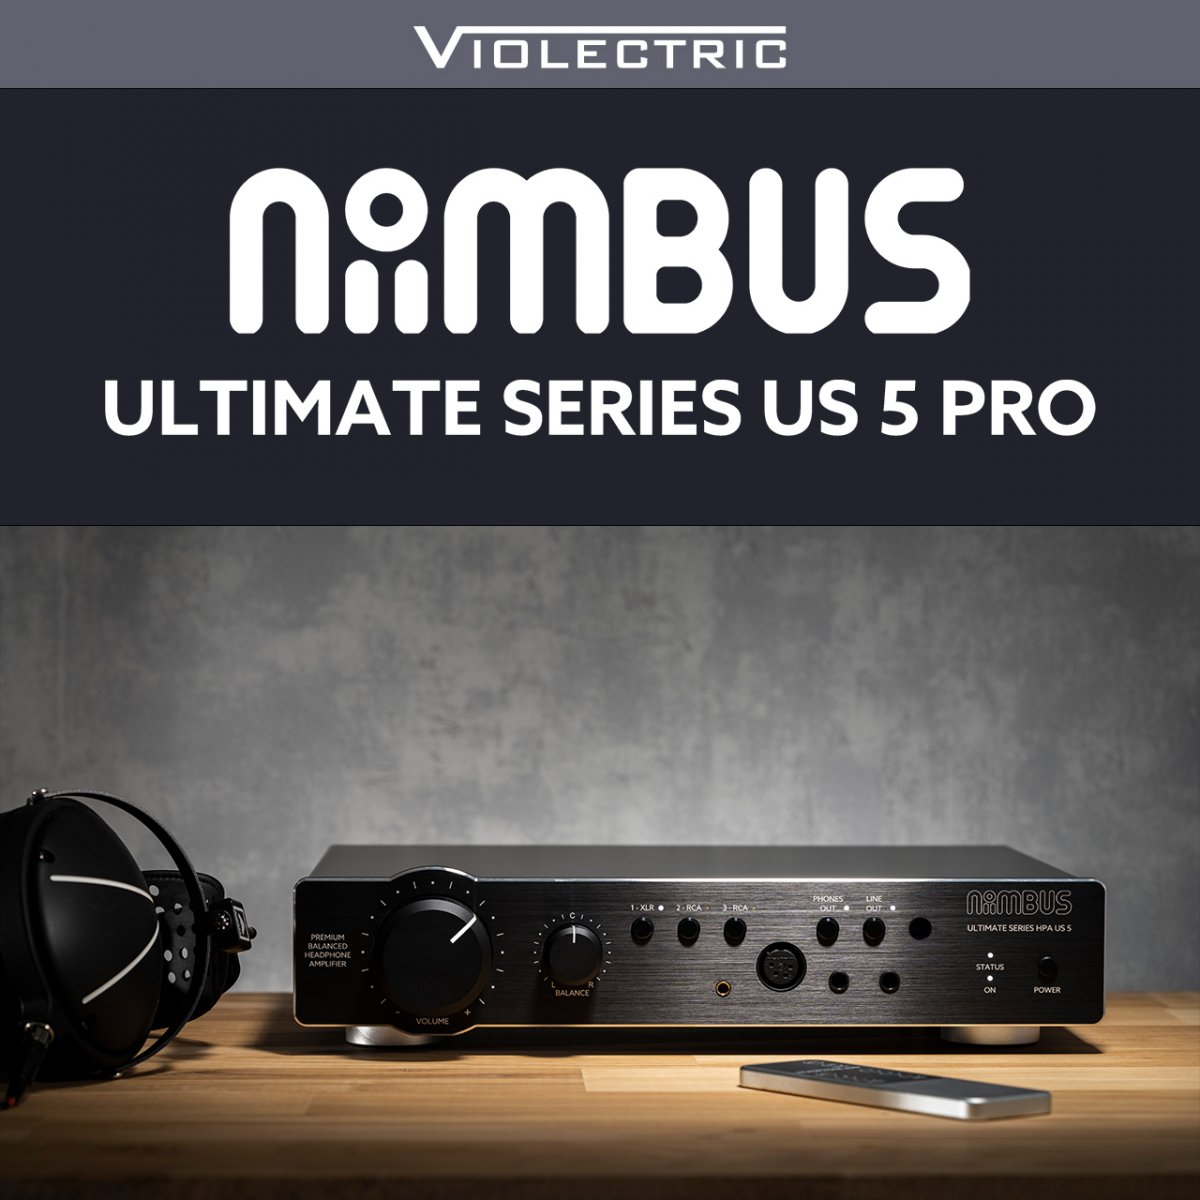 Niimbus US 5 PRO ダイナミックヘッドフォン用に最適化された低ノイズ、超低歪みのアナログ回路設計